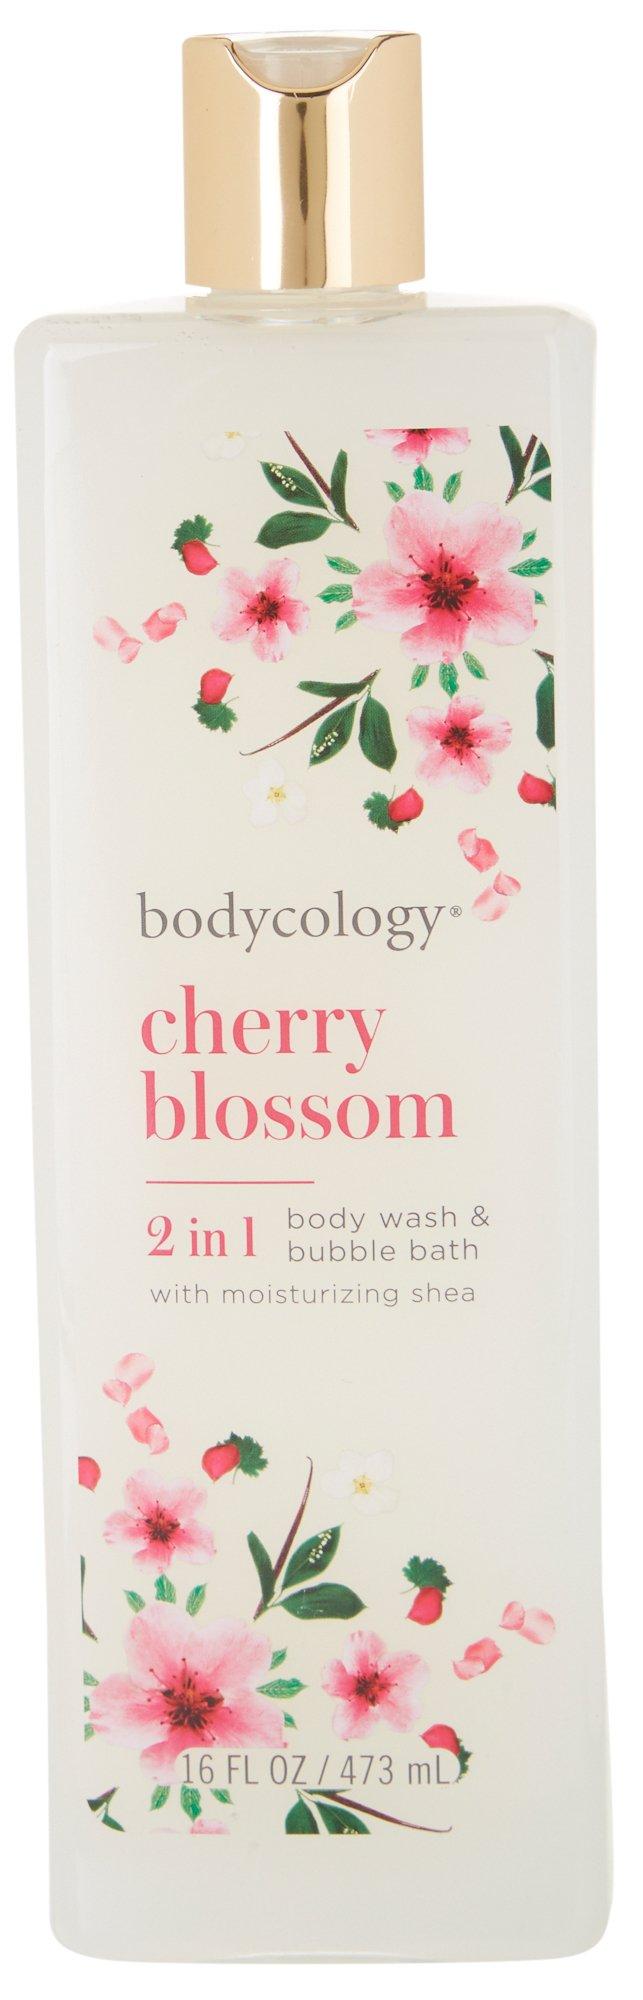 Bodycology Cherry Blossom Body Wash & Bubble Bath 16 oz.